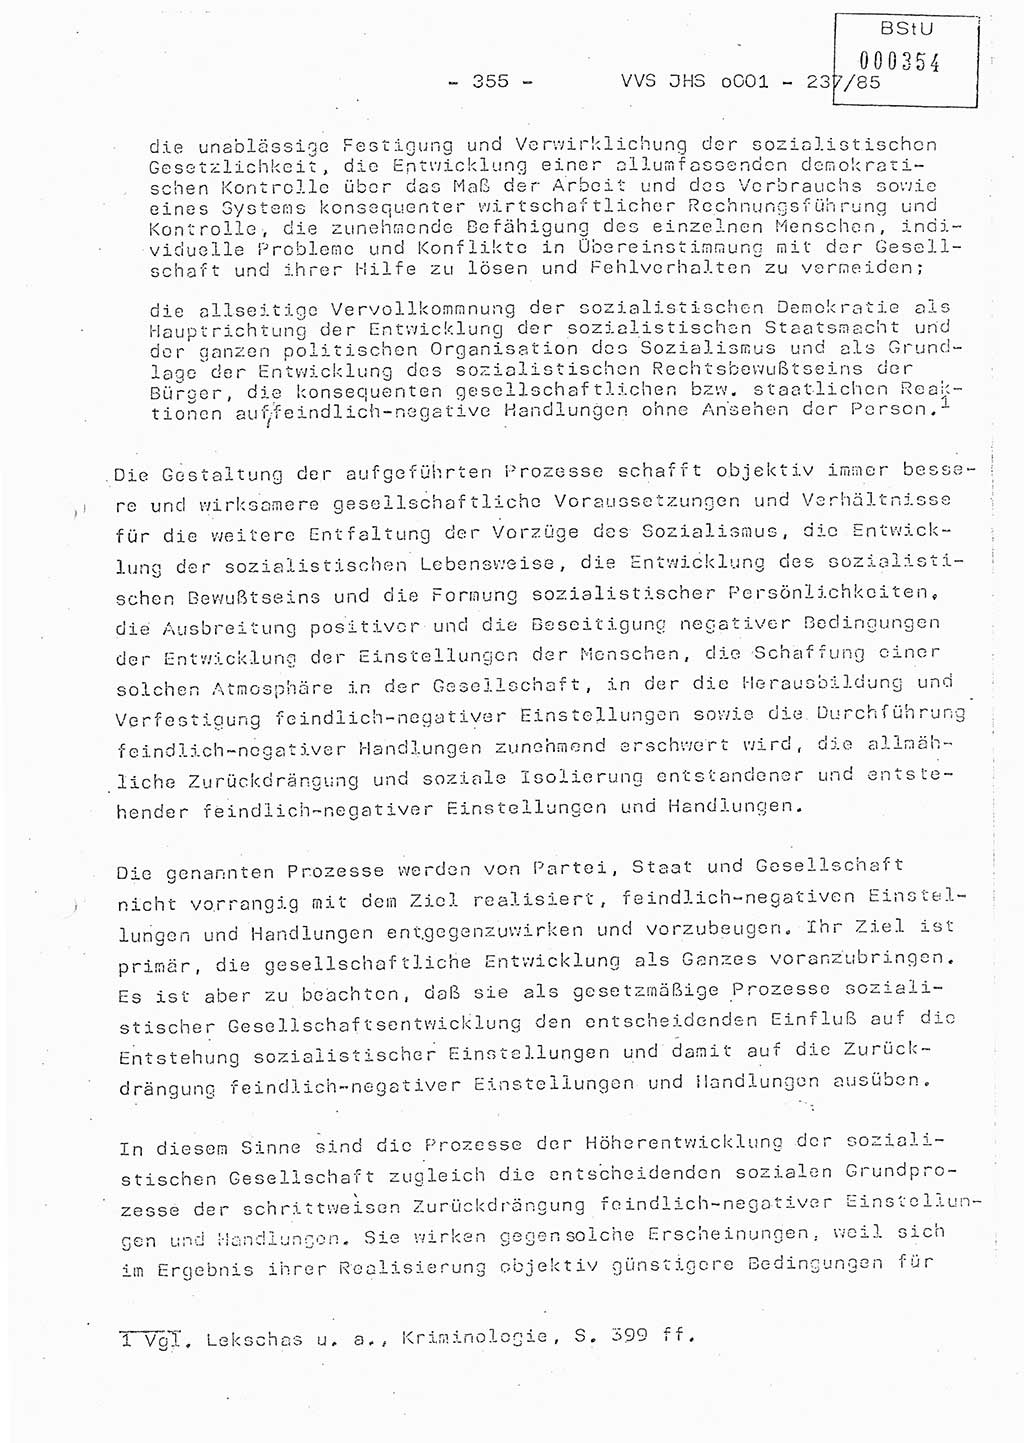 Dissertation Oberstleutnant Peter Jakulski (JHS), Oberstleutnat Christian Rudolph (HA Ⅸ), Major Horst Böttger (ZMD), Major Wolfgang Grüneberg (JHS), Major Albert Meutsch (JHS), Ministerium für Staatssicherheit (MfS) [Deutsche Demokratische Republik (DDR)], Juristische Hochschule (JHS), Vertrauliche Verschlußsache (VVS) o001-237/85, Potsdam 1985, Seite 355 (Diss. MfS DDR JHS VVS o001-237/85 1985, S. 355)